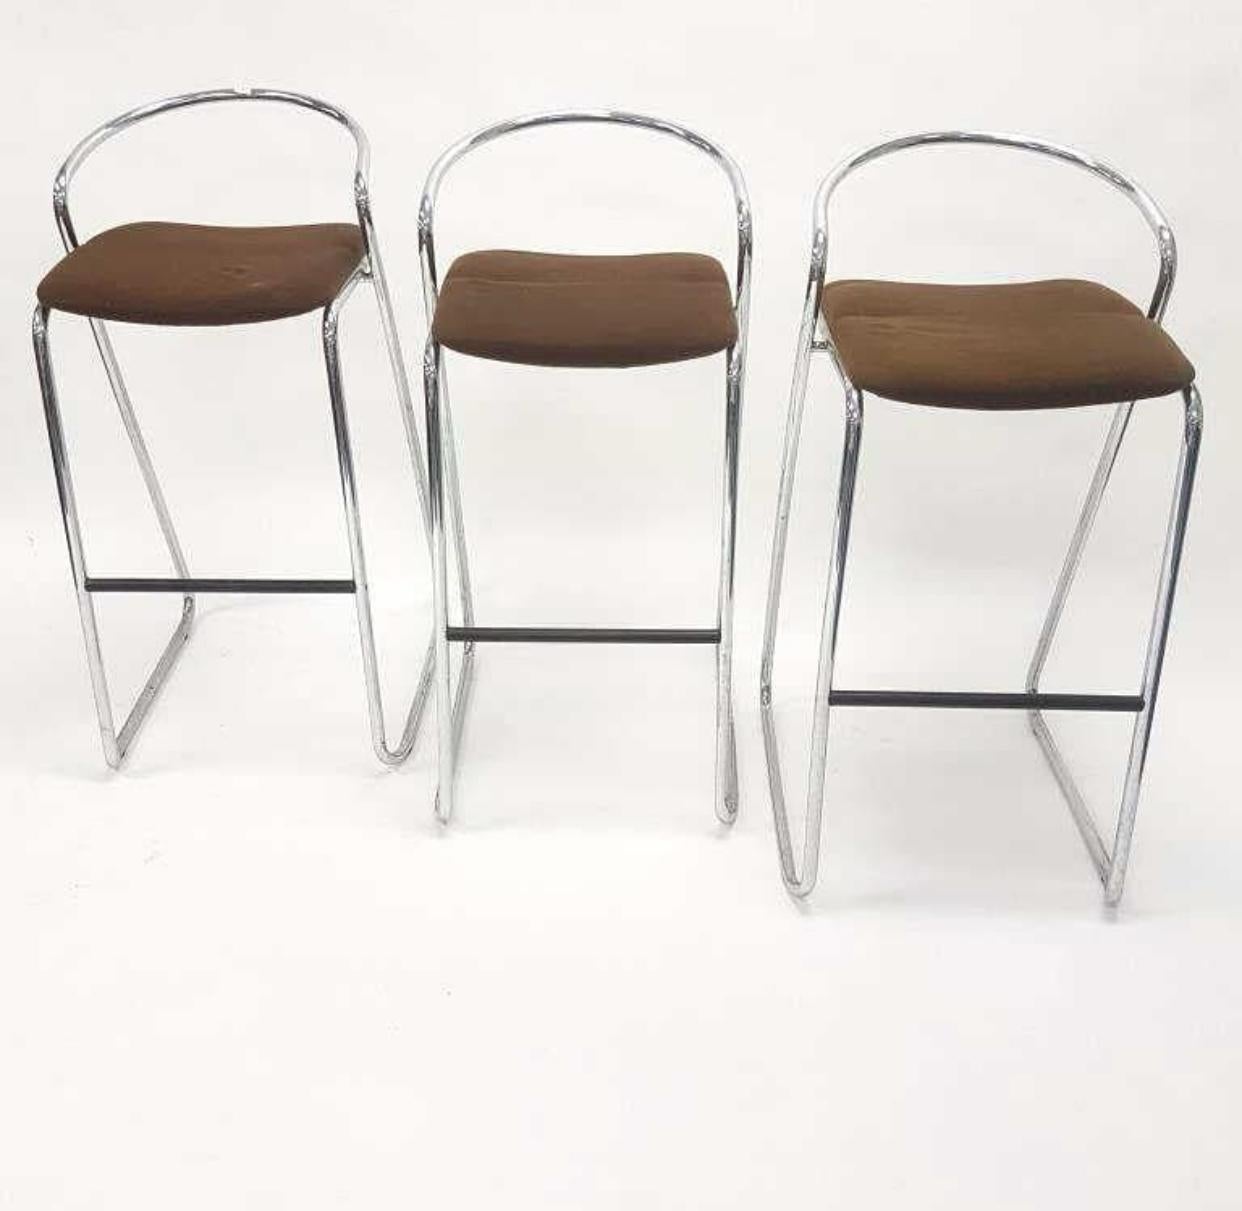 Ensemble de trois tabourets de bar minimalistes de Hank Lowenstein, fabriqués en Italie. Les tabourets de bar sont constitués de barres en acier chromé et d'assises rembourrées en laine. Le padding des sièges est légèrement bosselé. Il peut être